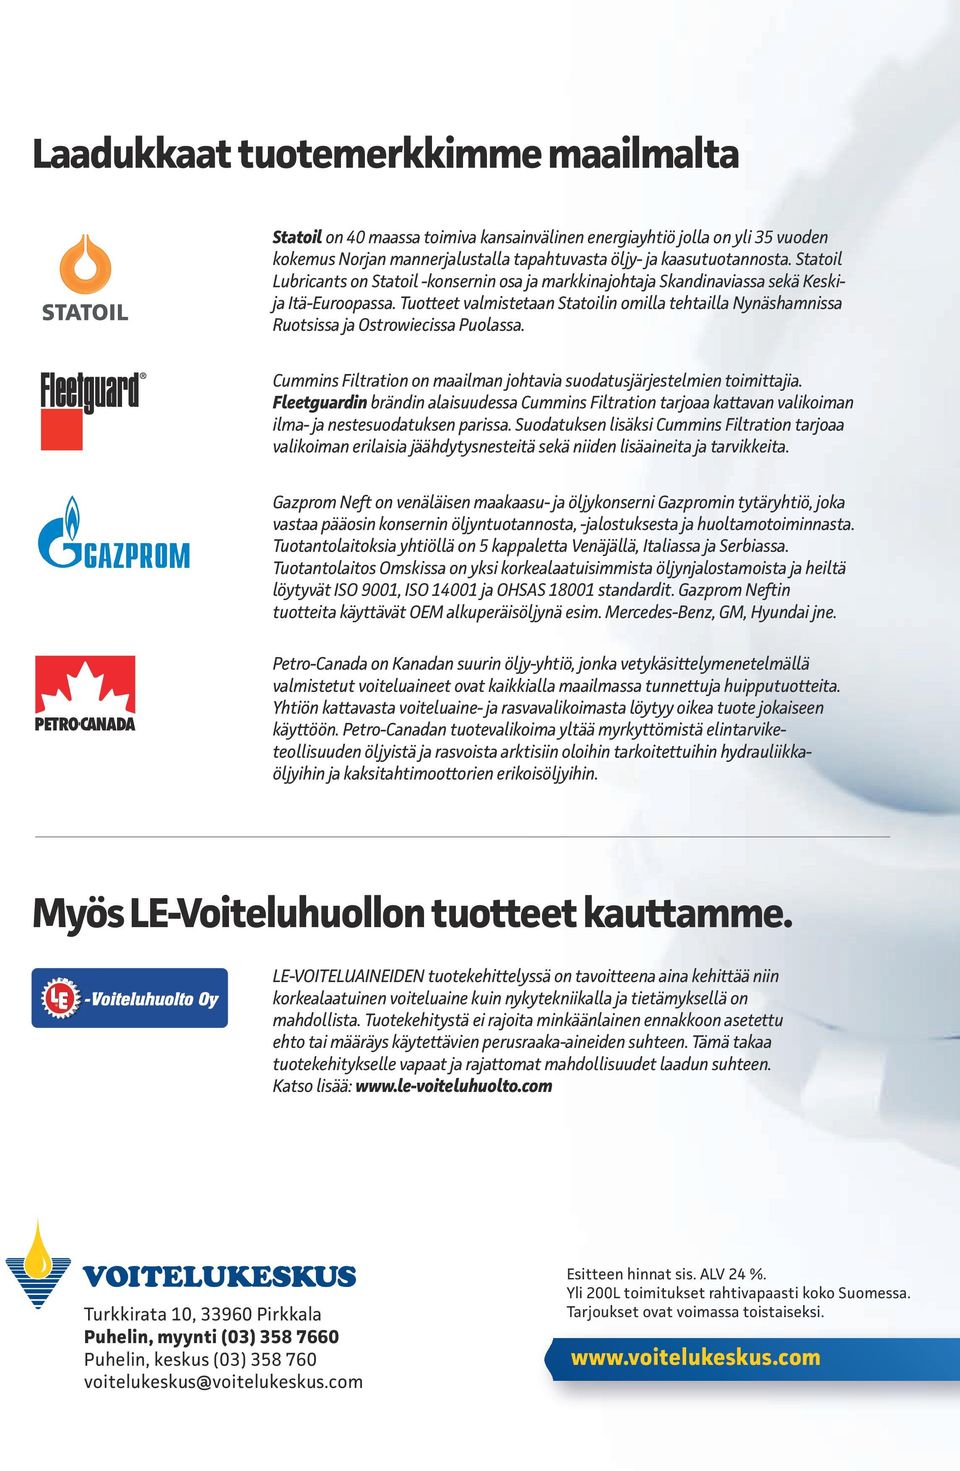 Tuotteet valmistetaan Statoilin omilla tehtailla Nynäshamnissa Ruotsissa ja Ostrowiecissa Puolassa. Cummins Filtration on maailman johtavia suodatusjärjestelmien toimittajia.